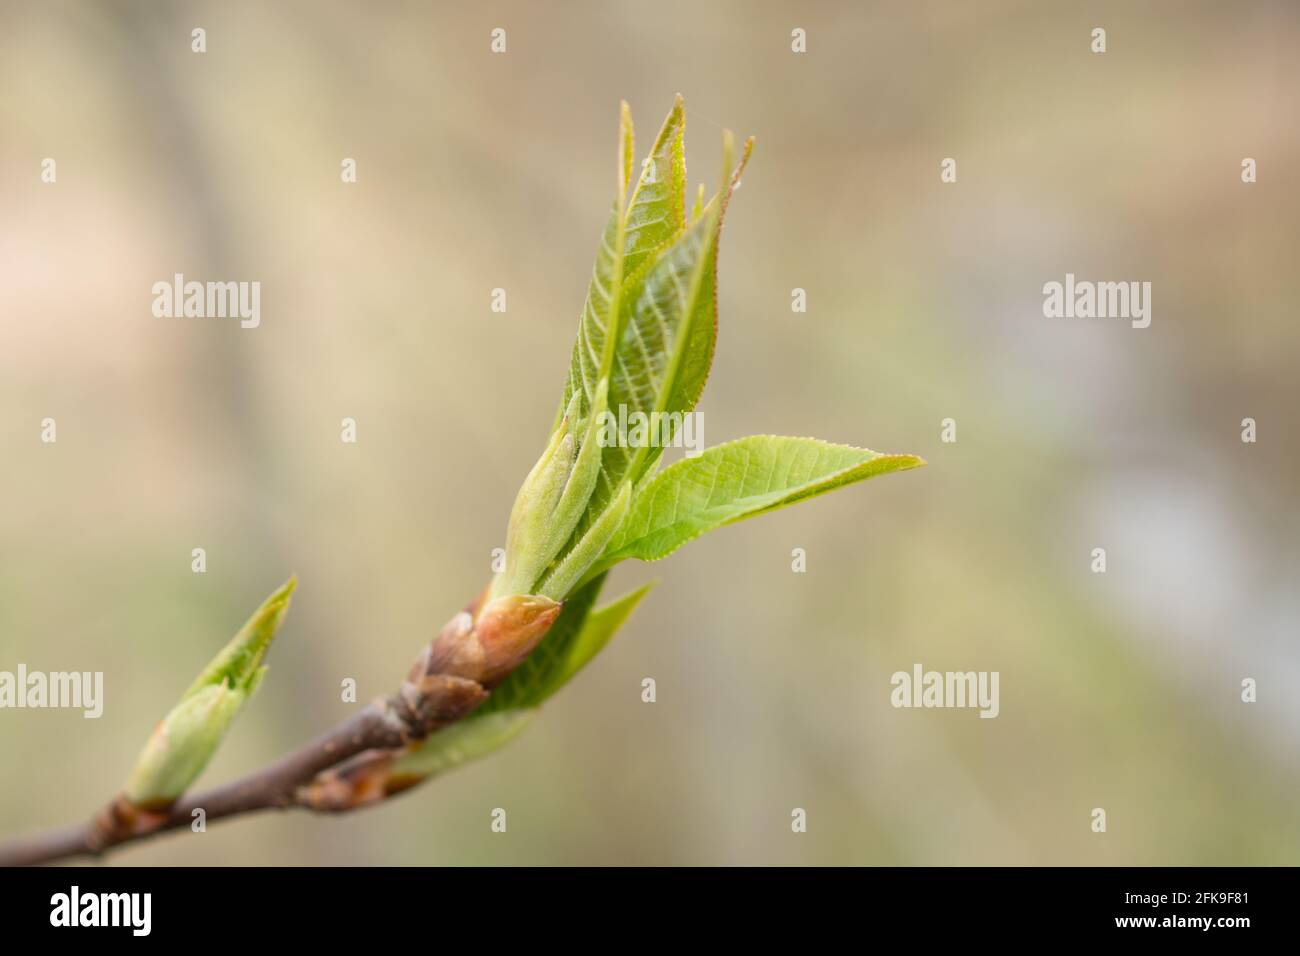 Makro Aufnahme von Einer aufblühenden Pflanze Foto Stock